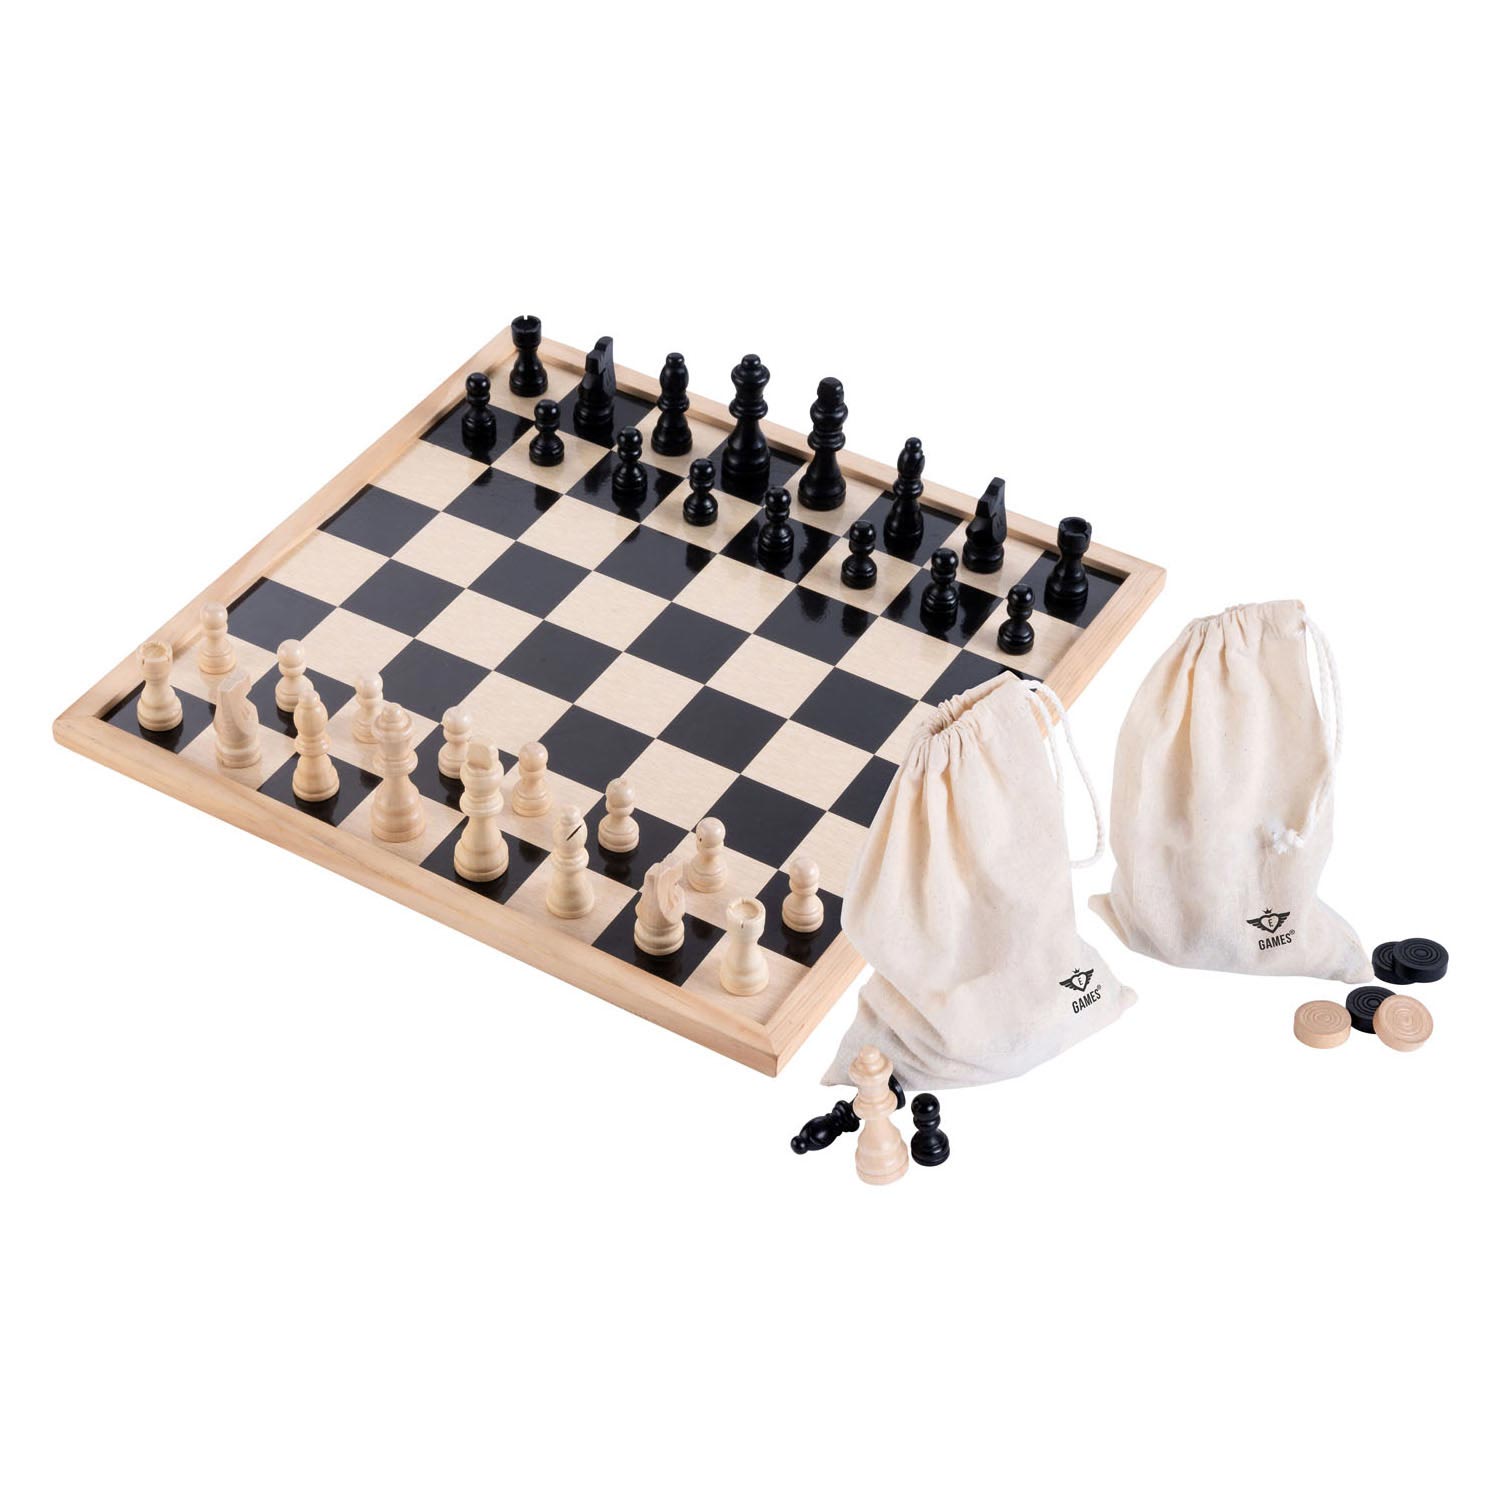 Schach- und Dame-Set mit Baumwolltasche